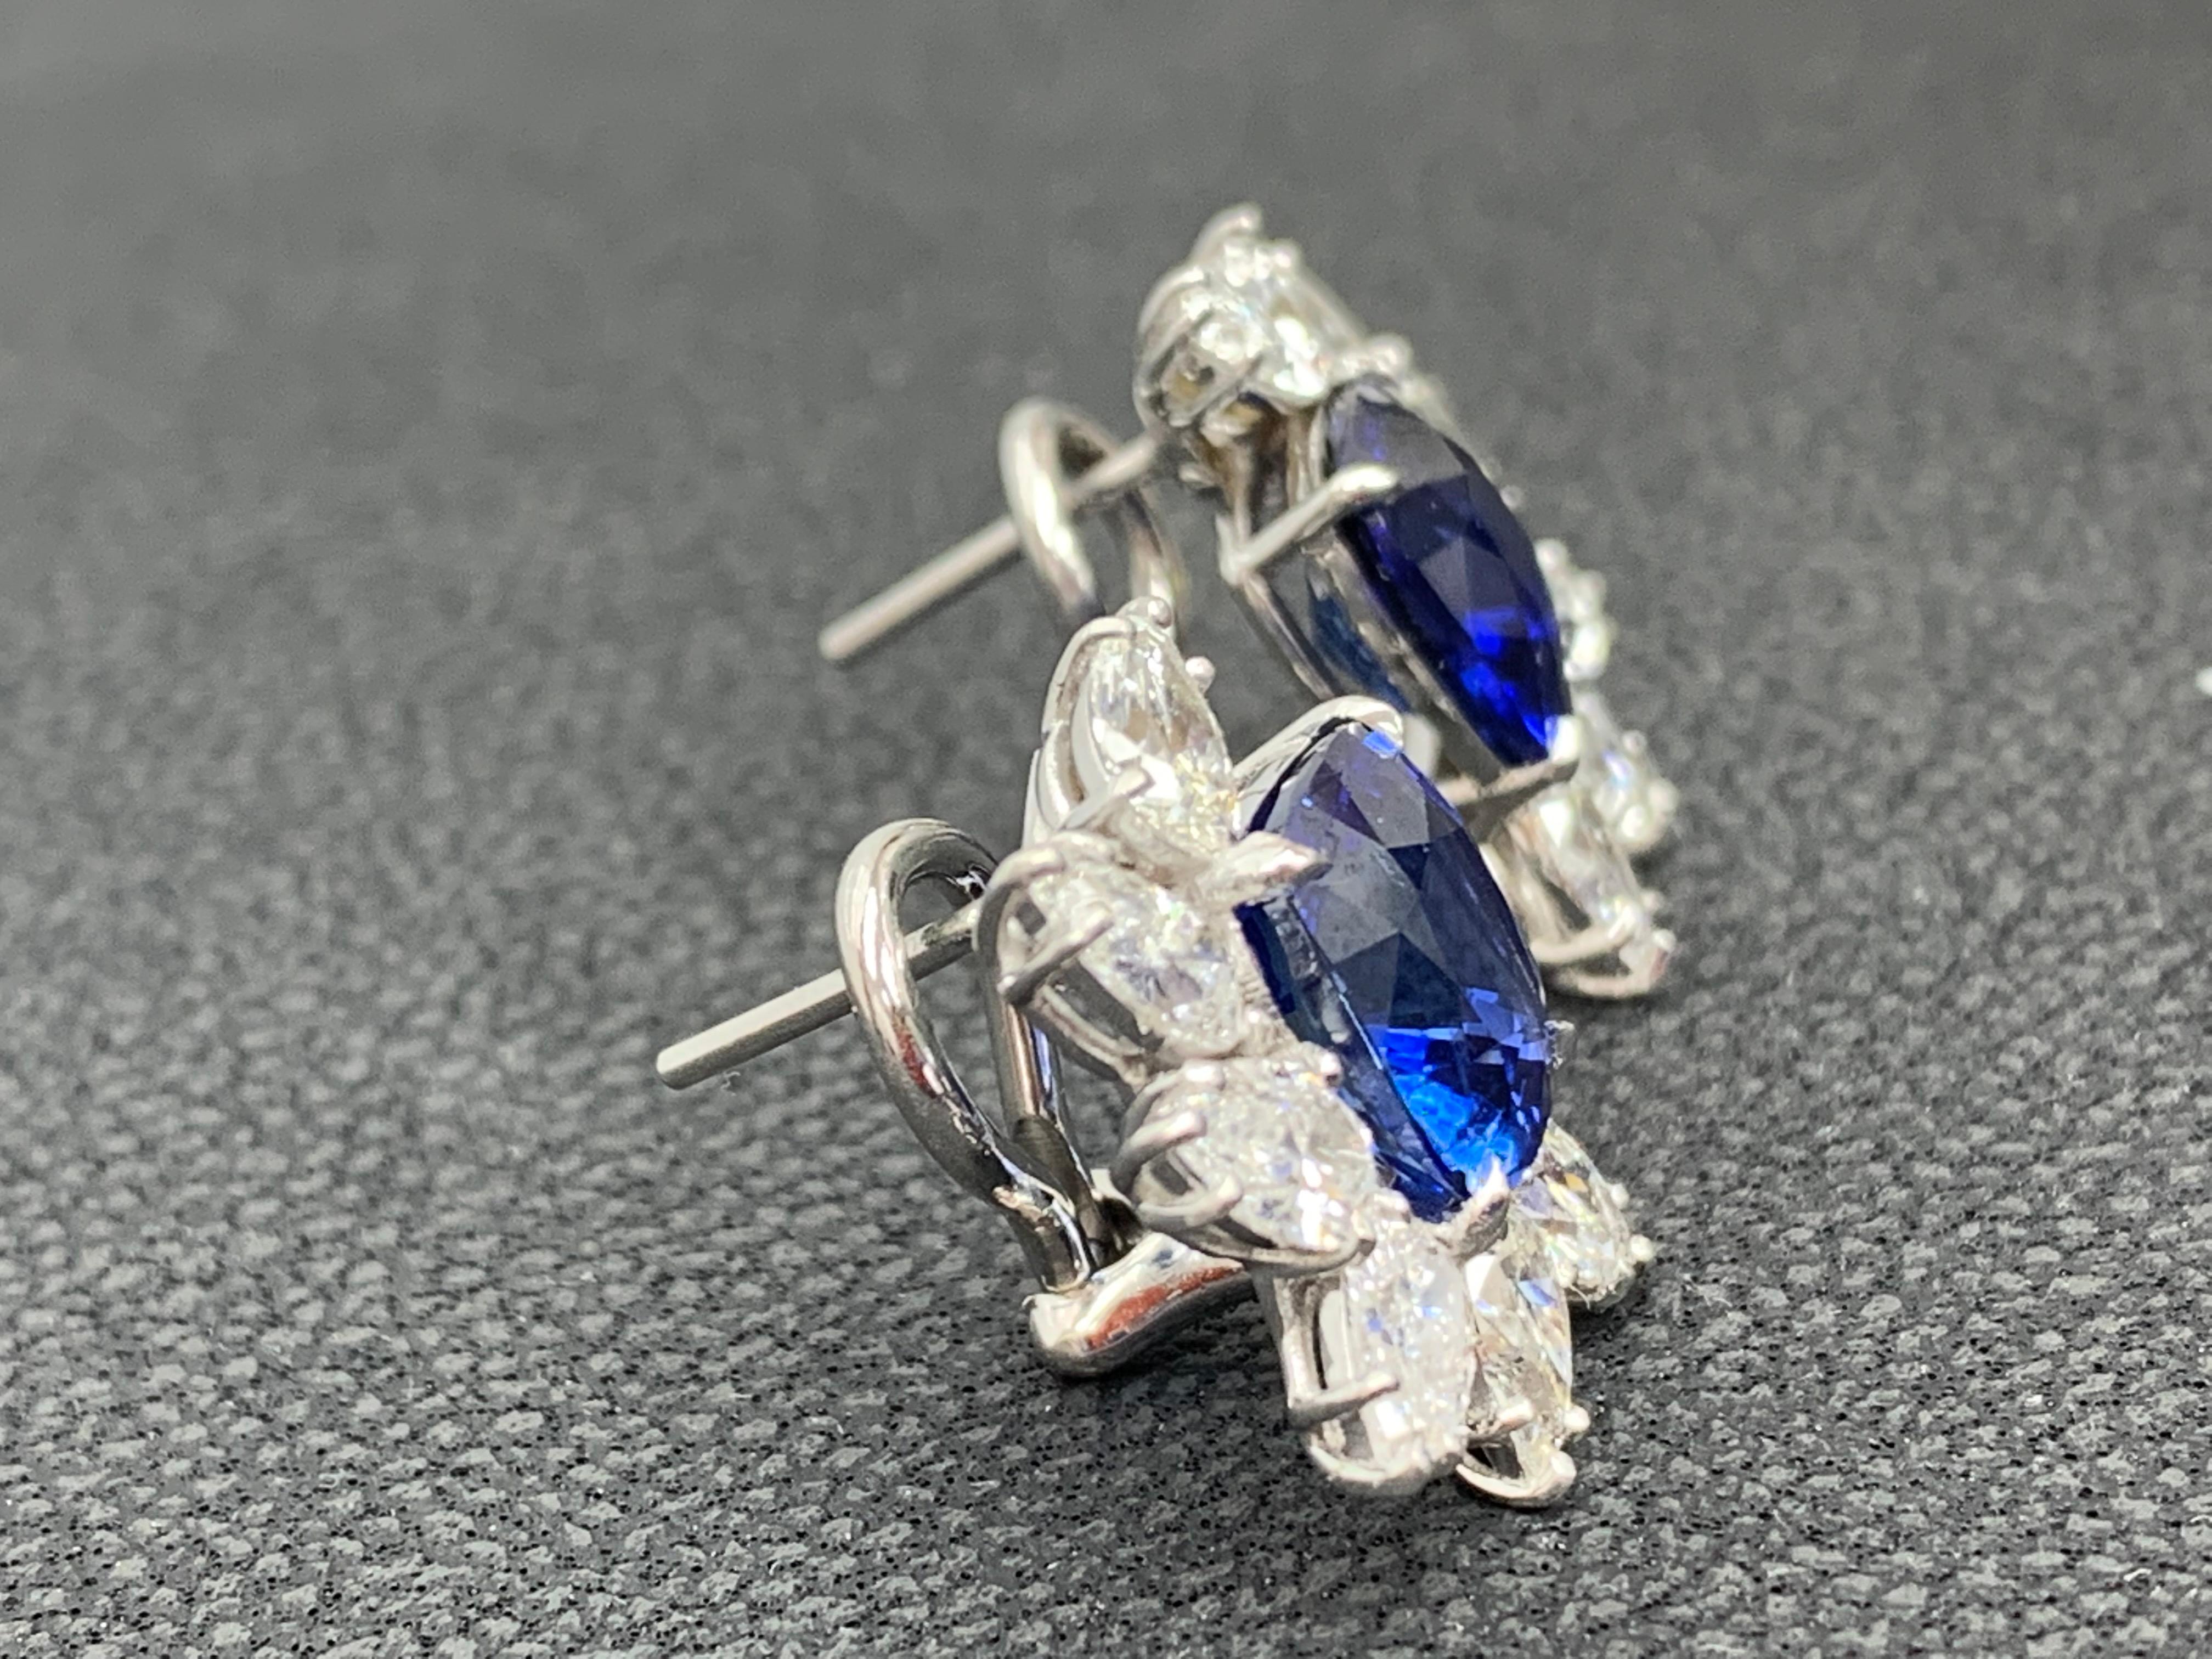 Ein einfaches und modisches Paar zertifizierter Ohrringe mit einem Cluster aus birnenförmigen Diamanten, die einen blauen Saphir im Kissenschliff halbwegs umgeben, gefasst in einem schönen Design aus 18k Weißgold. Der blaue Saphir wiegt insgesamt